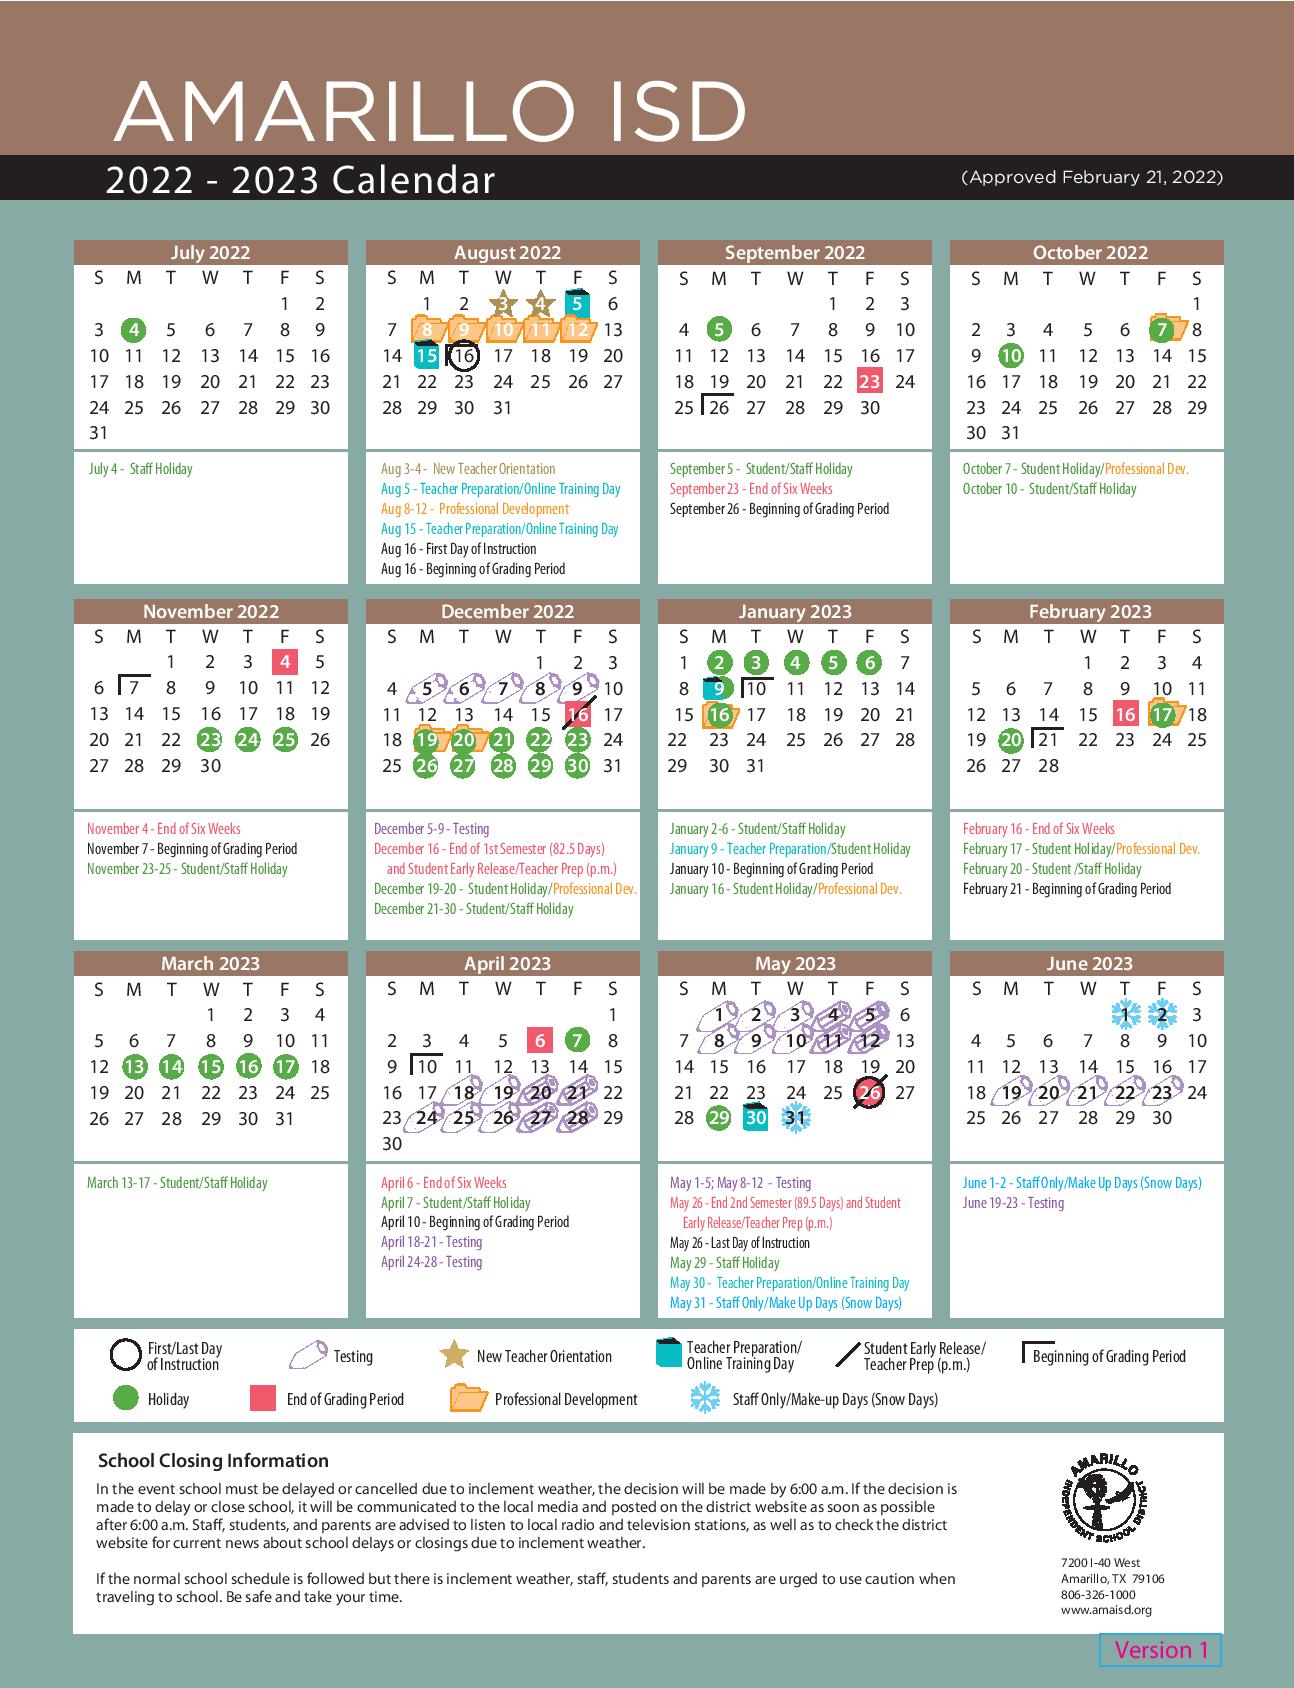 Capistrano Unified Calendar